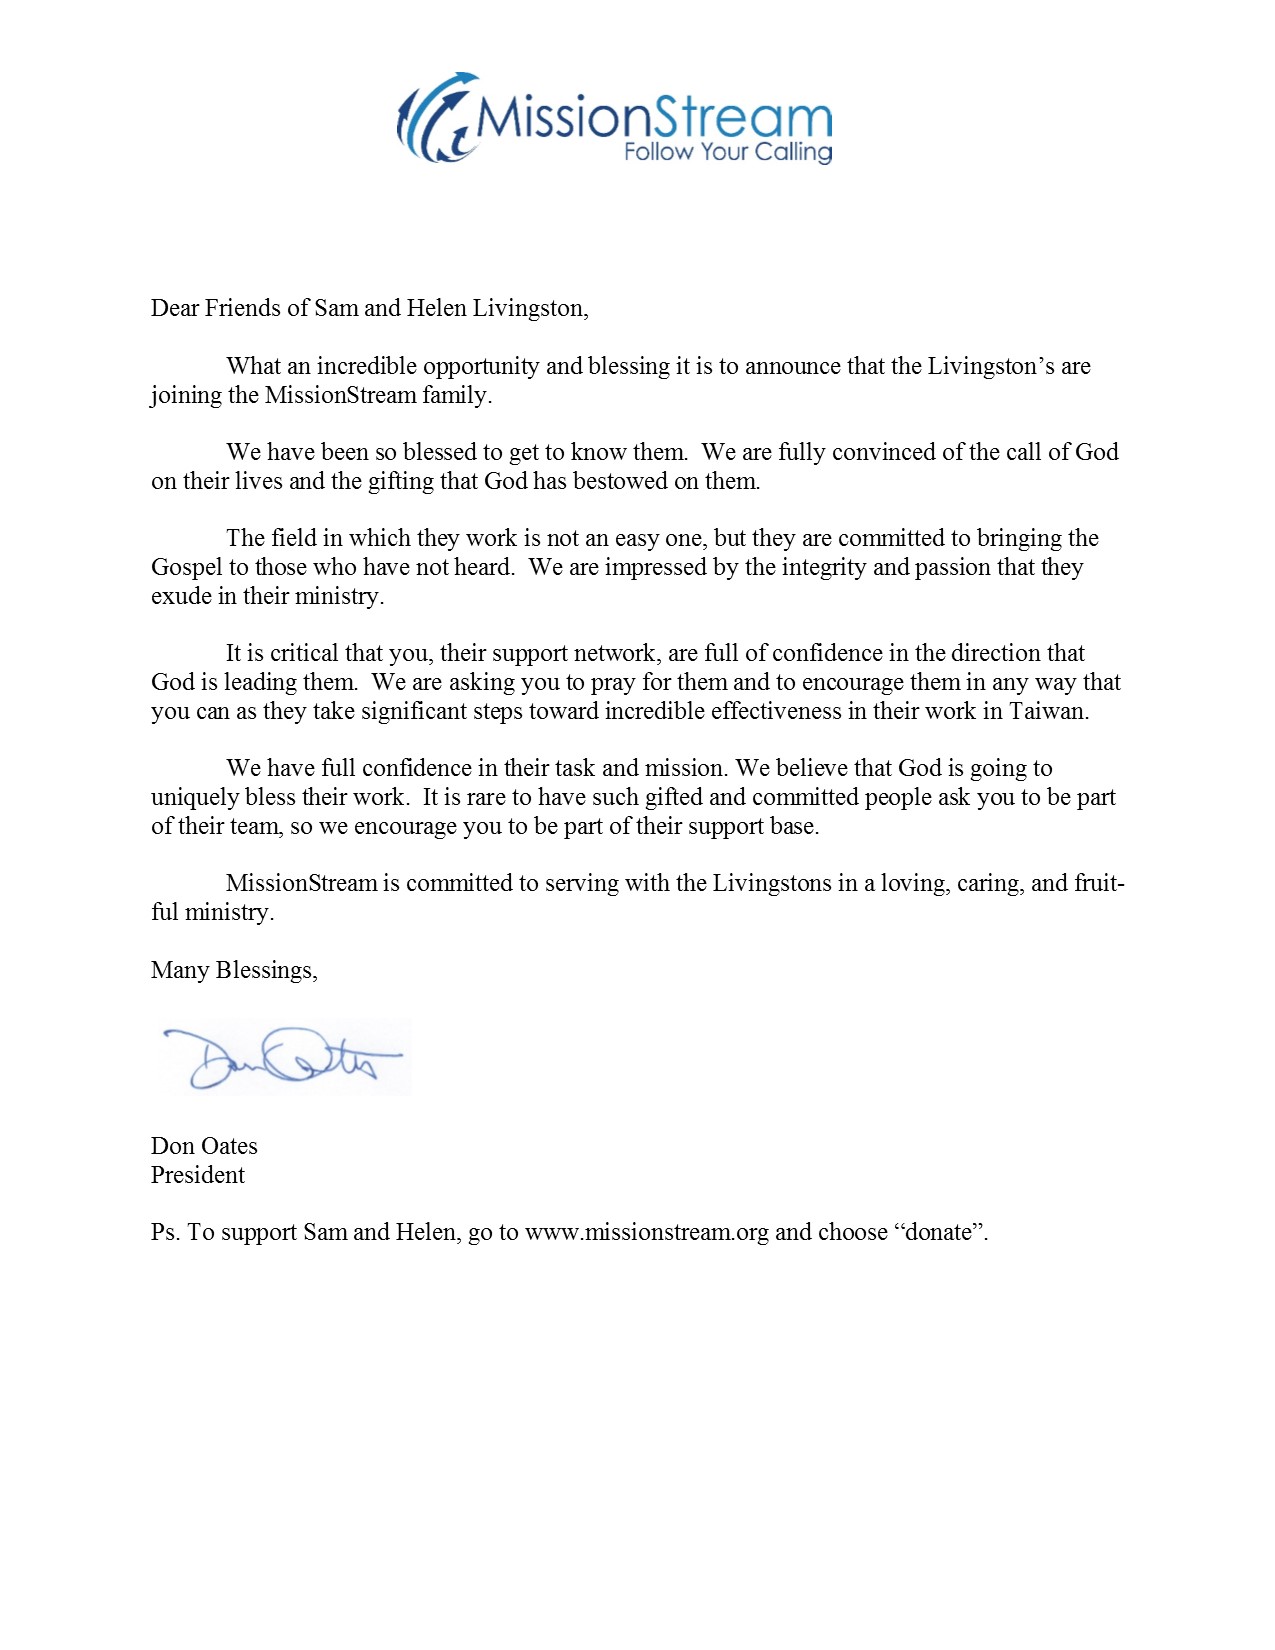 President's letter as JPEG MissionStream.jpg